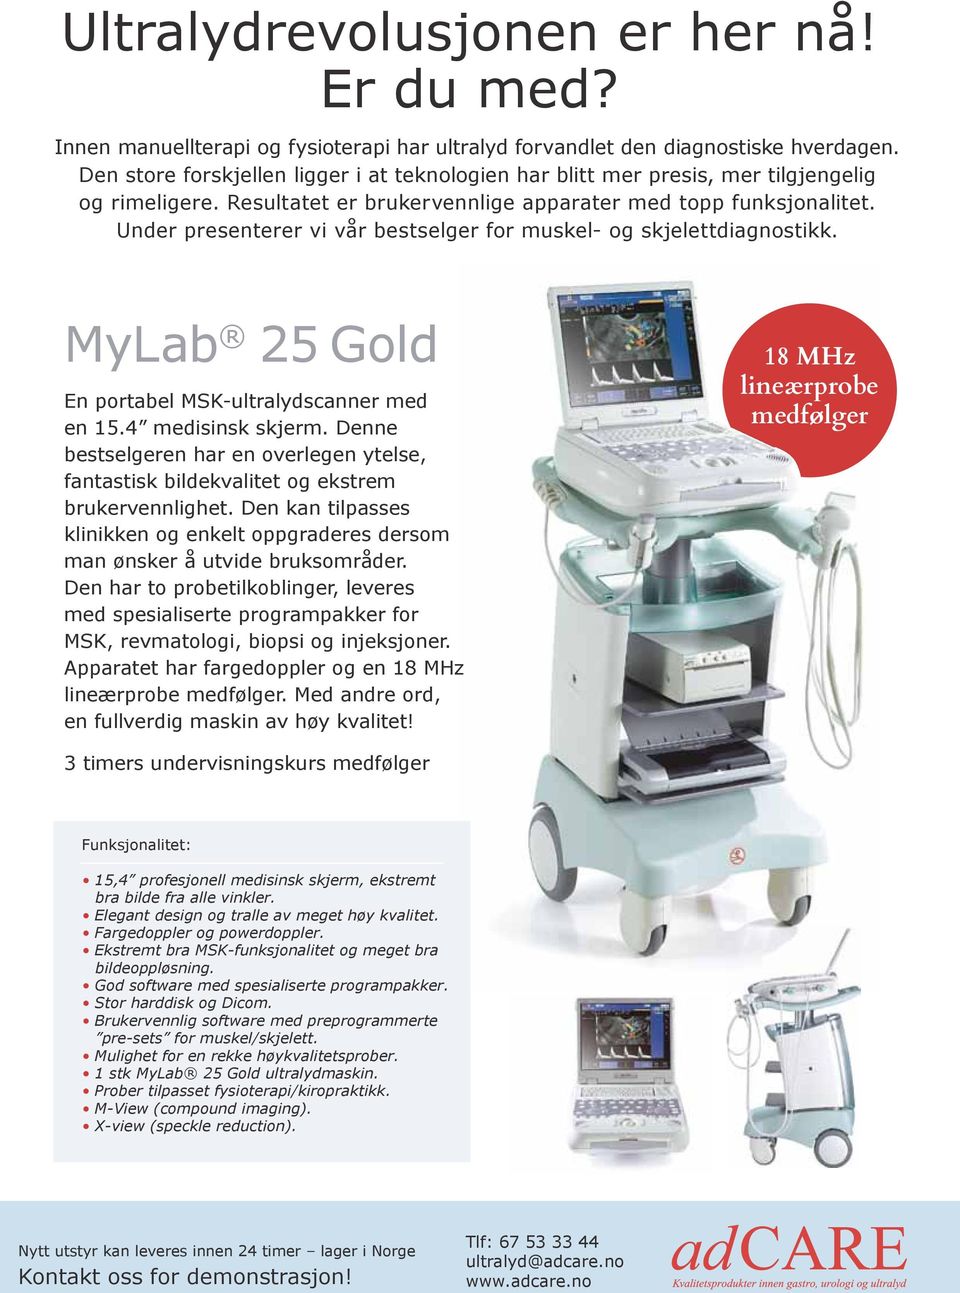 Under presenterer vi vår bestselger for muskel- og skjelettdiagnostikk. MyLab 25 Gold En portabel MSK-ultralydscanner med en 15.4 medisinsk skjerm.